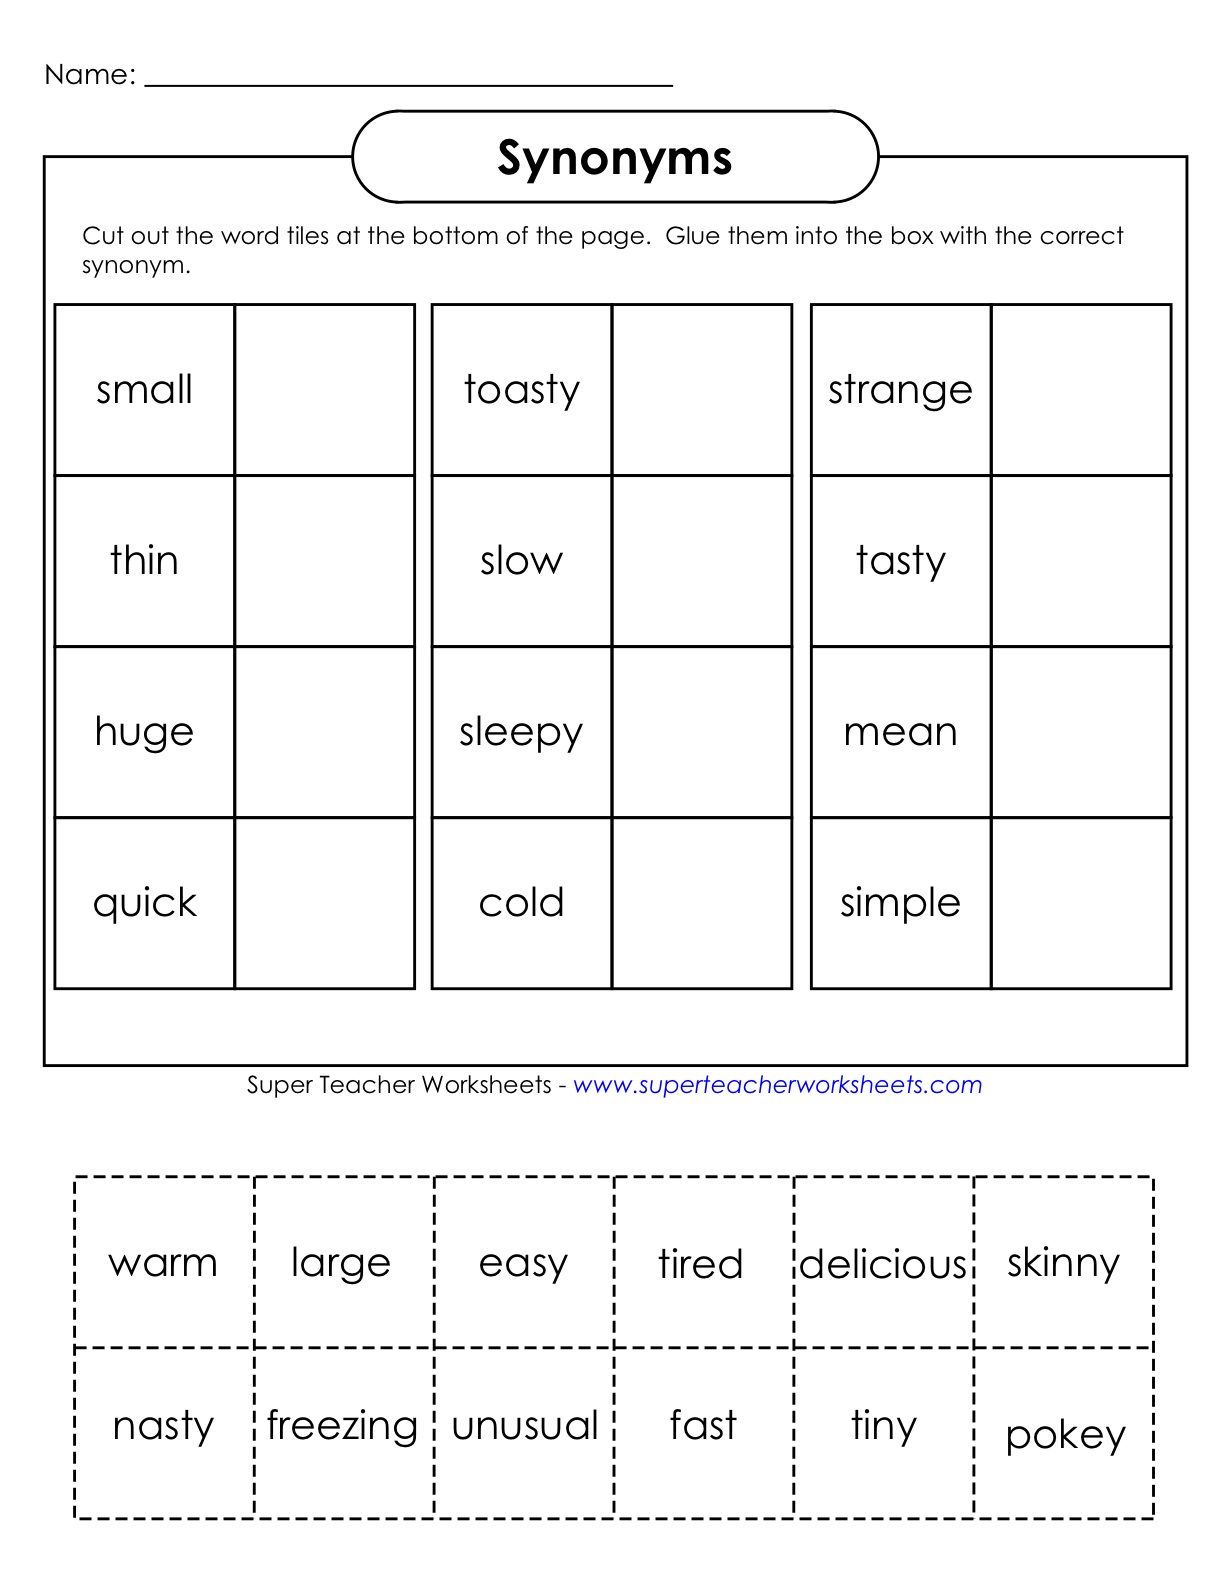 antonyms-synonyms-worksheet